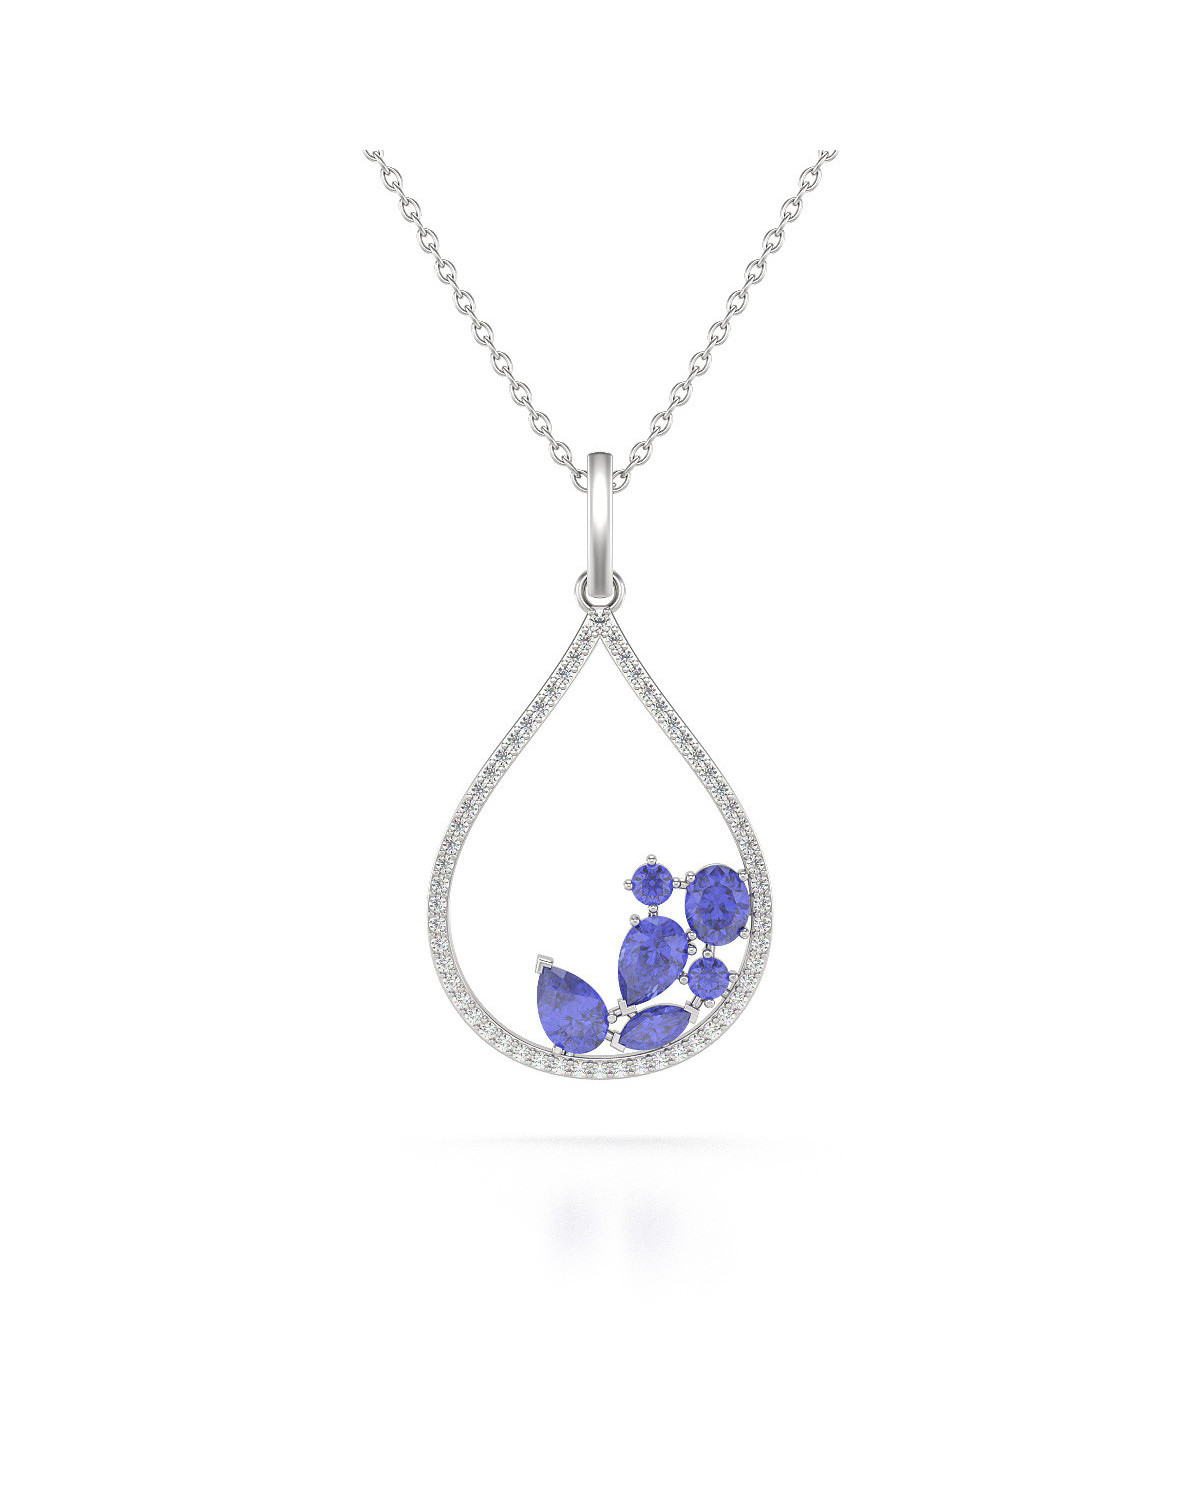 925 Silver Tanzanite Diamonds Necklace Pendant Chain included